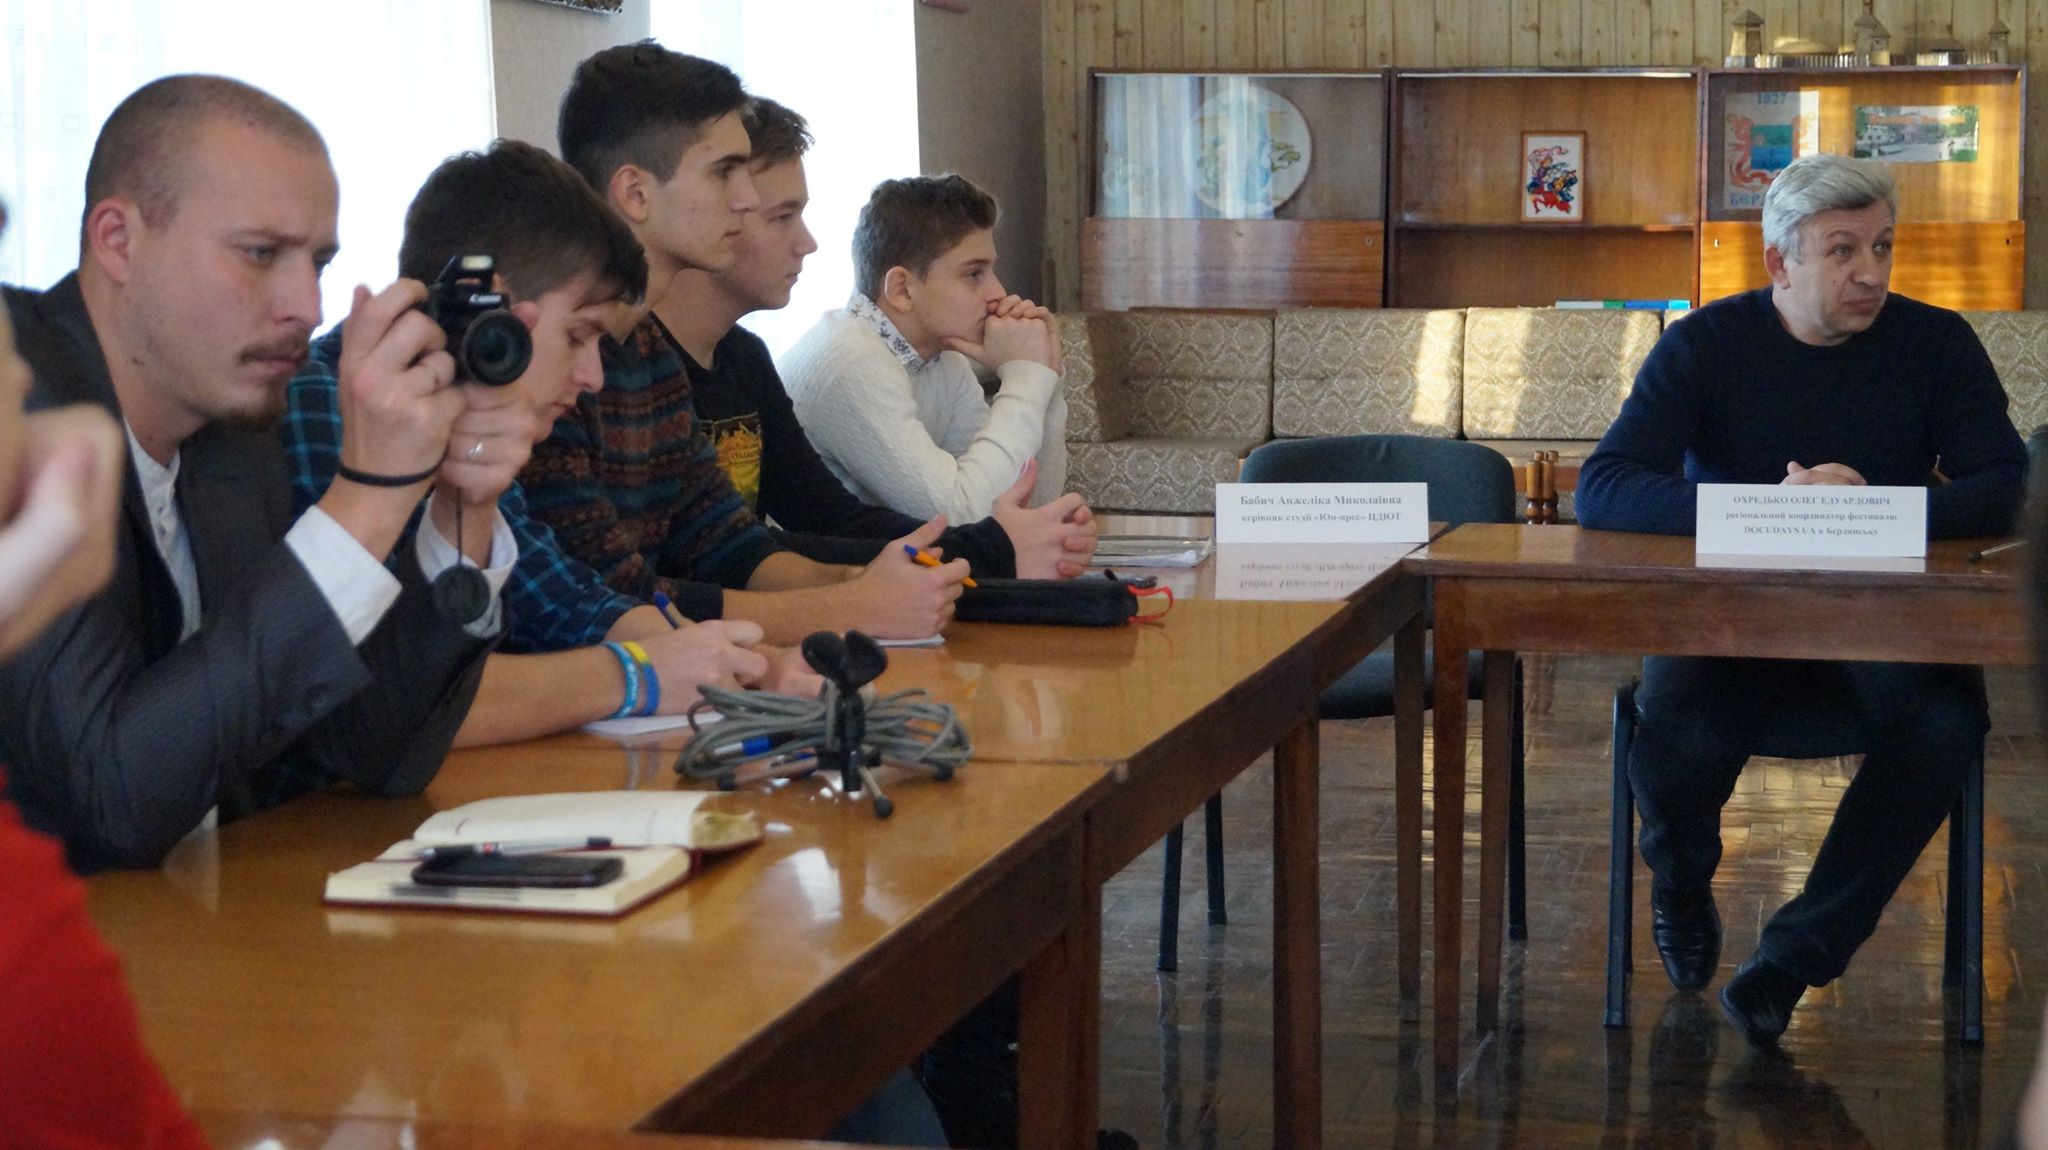 XII Путешествующий фестиваль документального кино про права человека Docudays UA прибыл в Бердянск - картинка 3